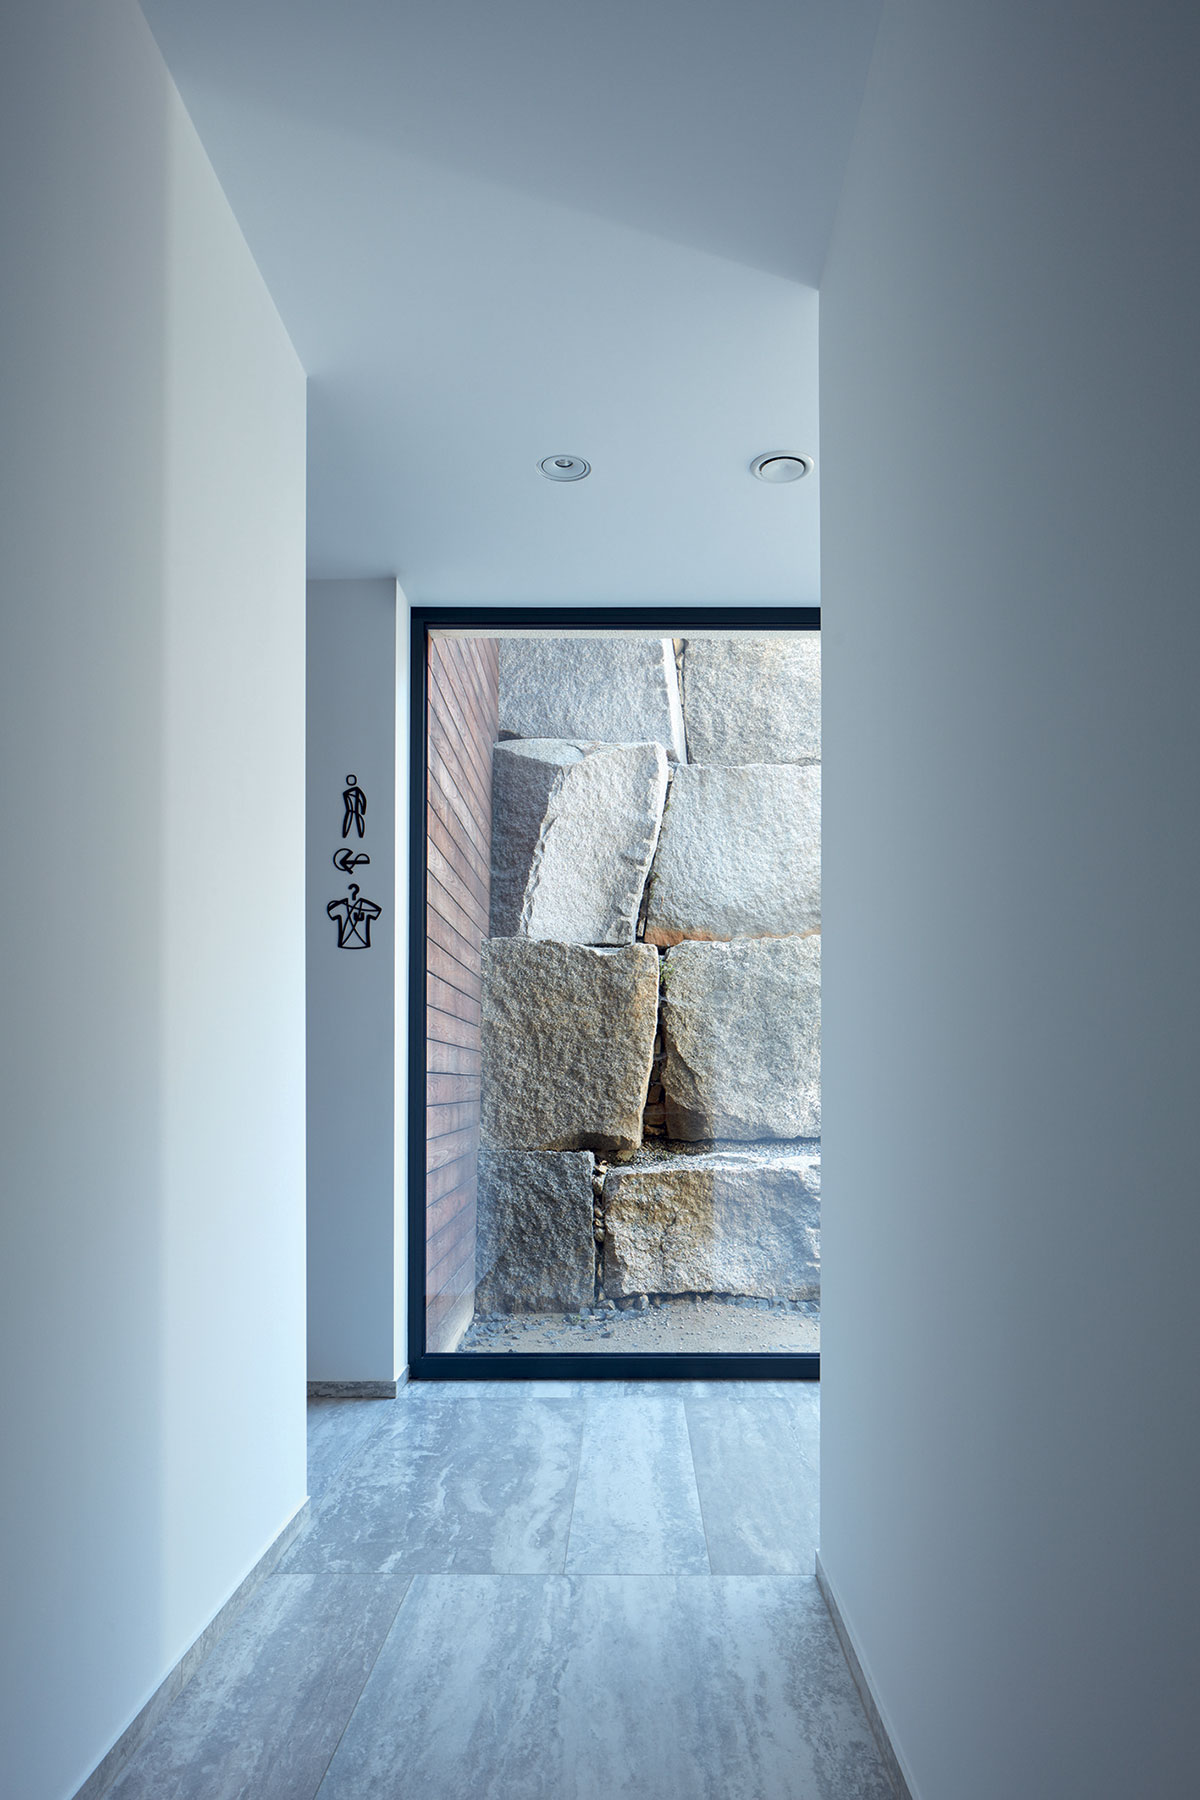 Dizajn postavený na kontraste drsných kamenných balvanov v exteriéri a čistých povrchov v interiéri funguje a vytvára jedinečnú až umeleckú atmosféru.